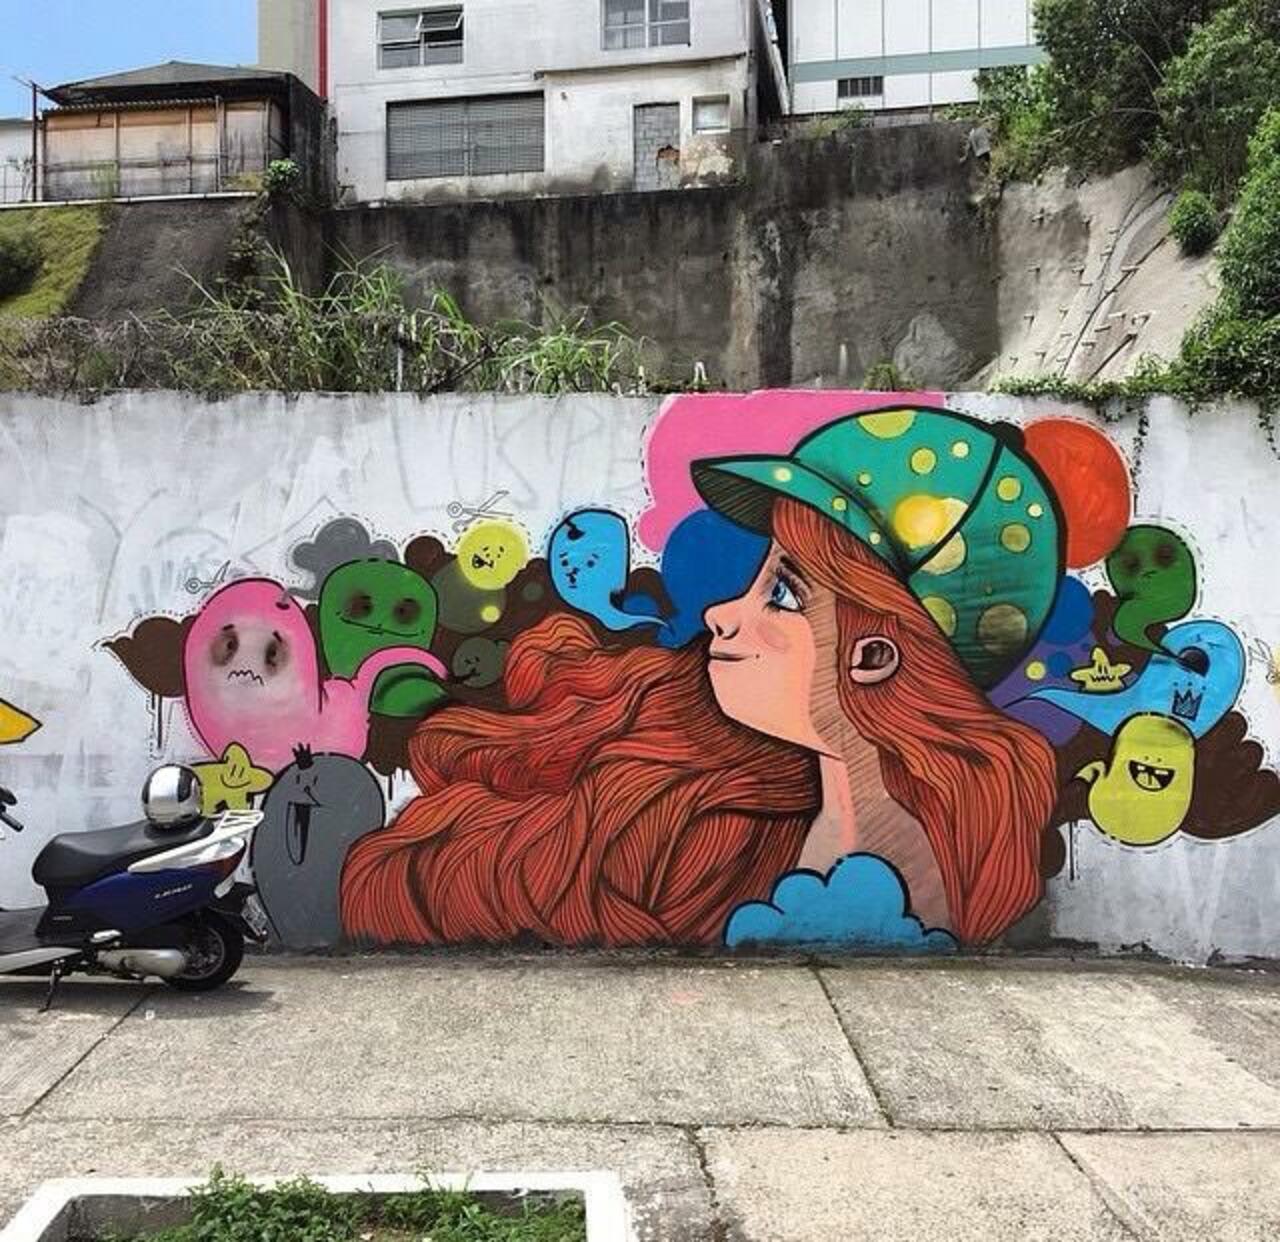 Endearing Street Art by Vupulos in São Paulo, Brazil 

#art #mural #graffiti #streetart http://t.co/ynIaSPZe6h